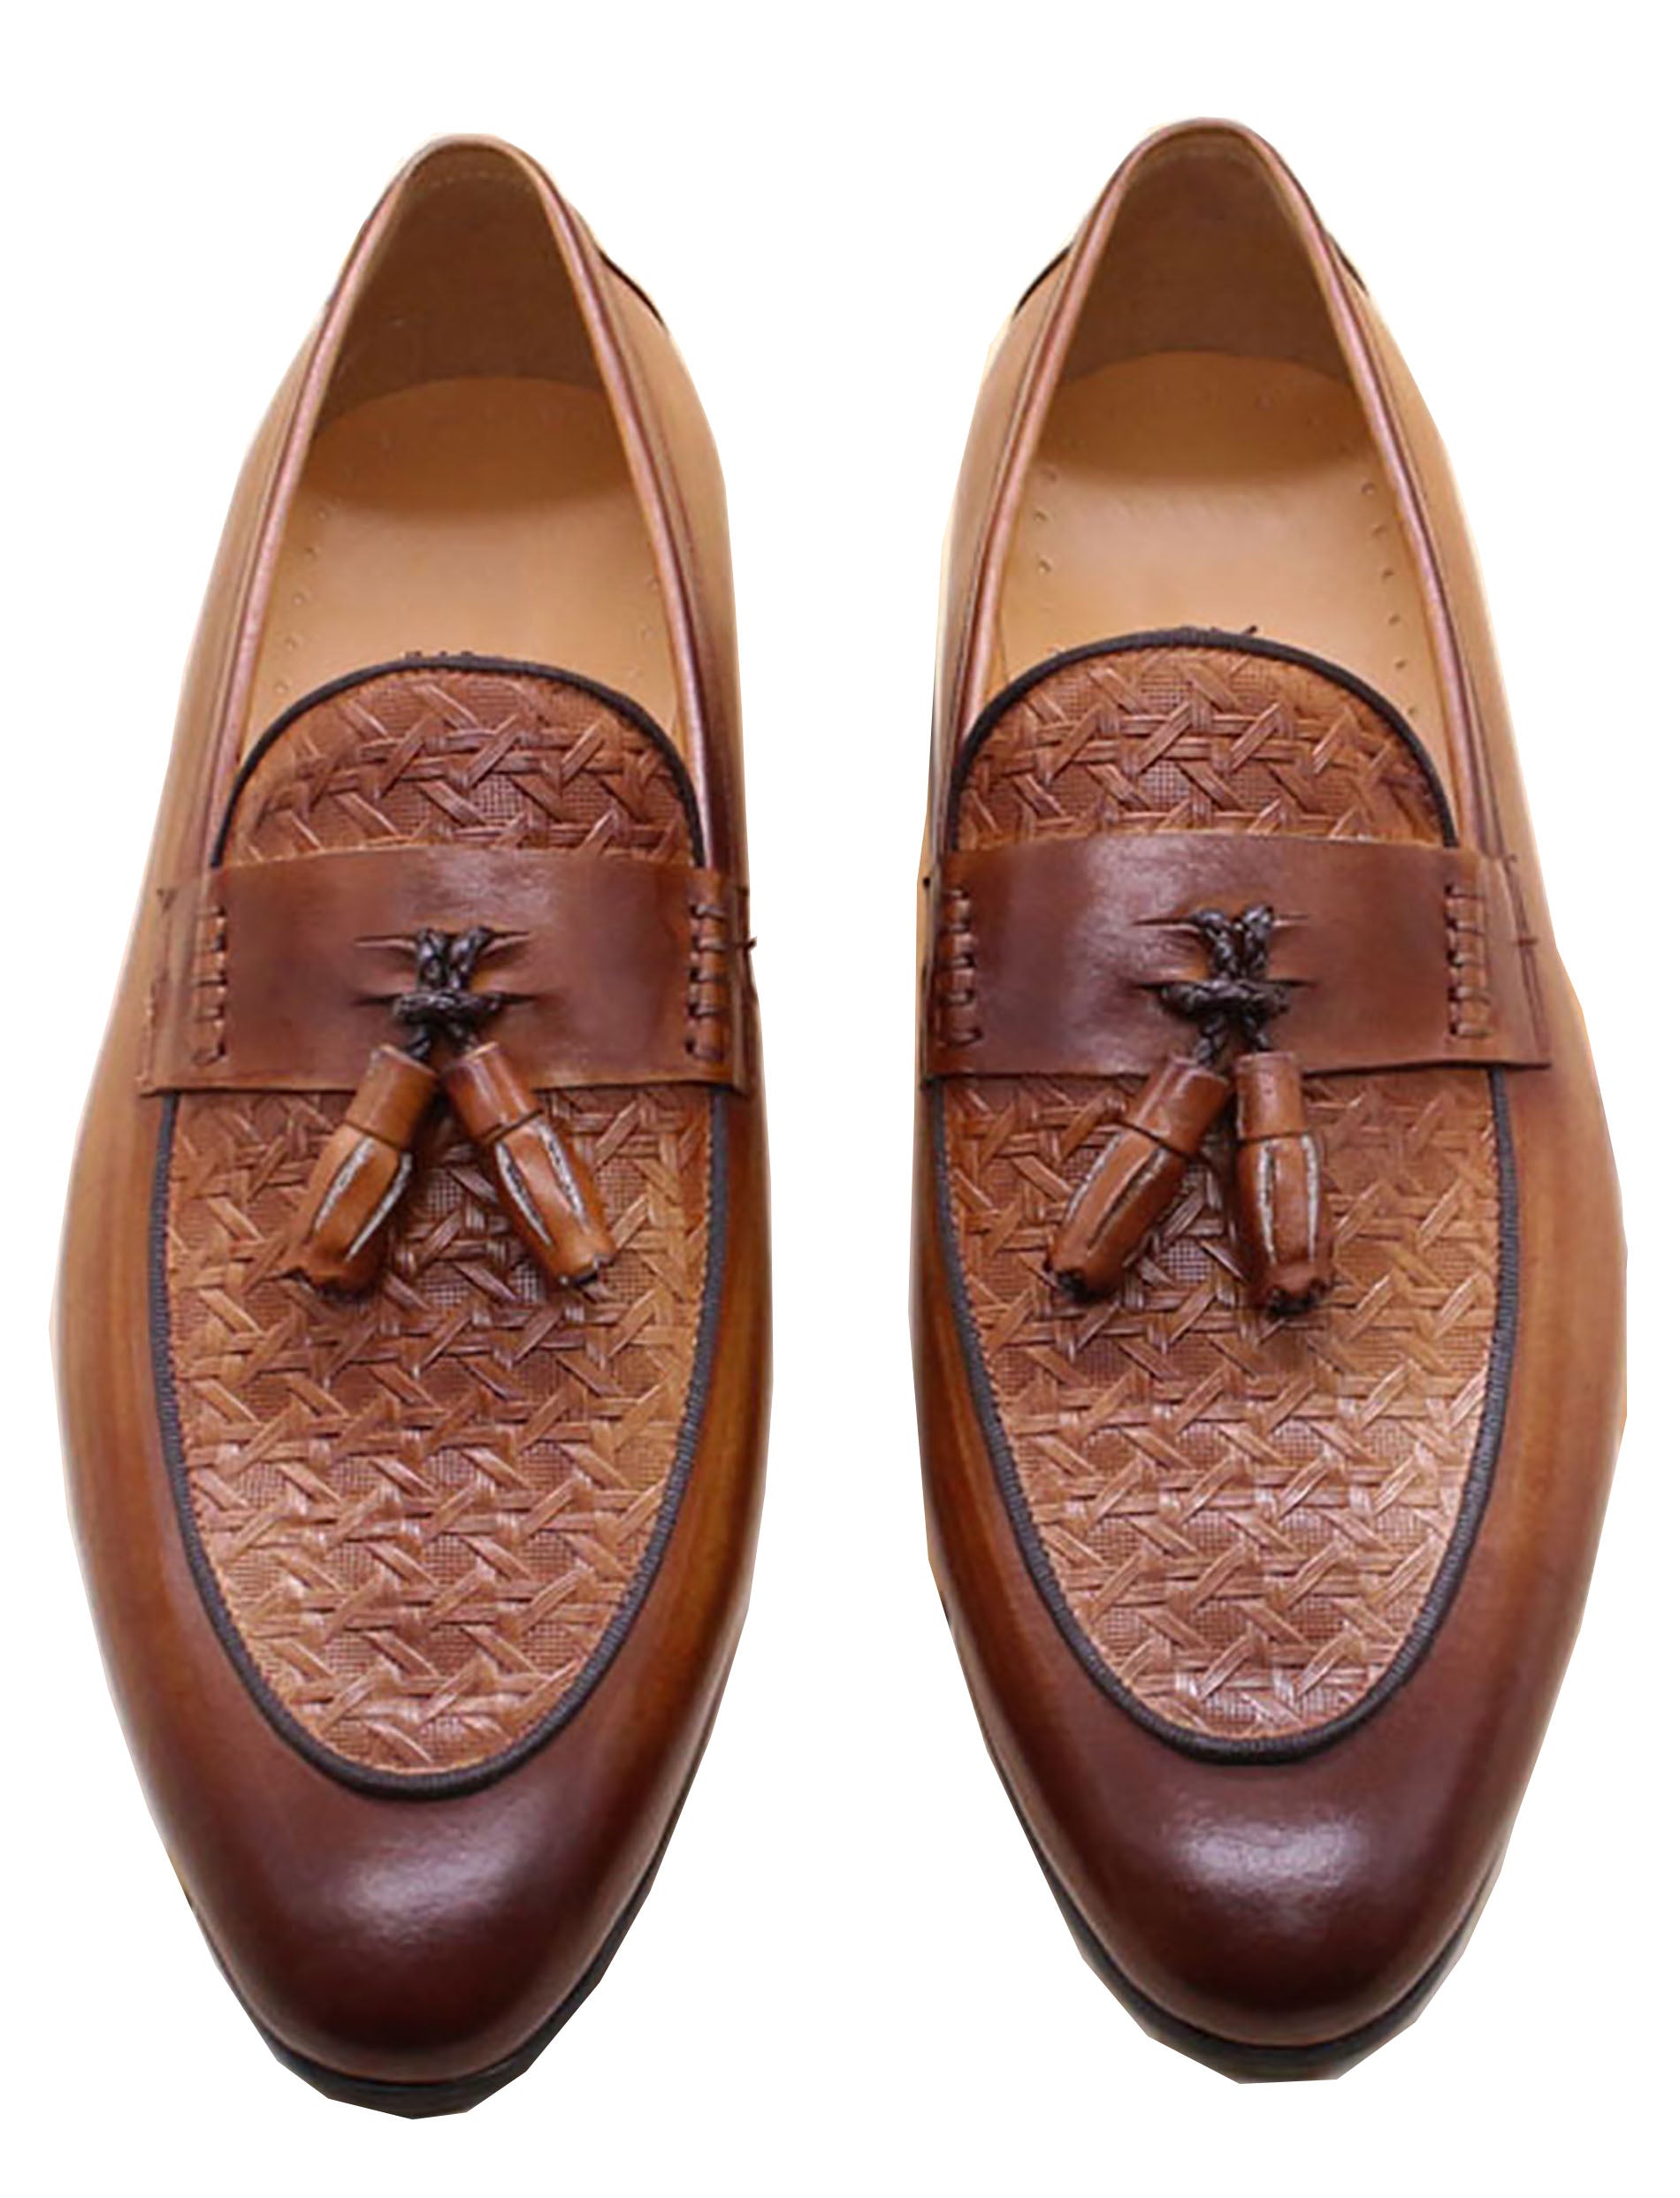 Men's Formal Dress Silp On Tassel Loafers